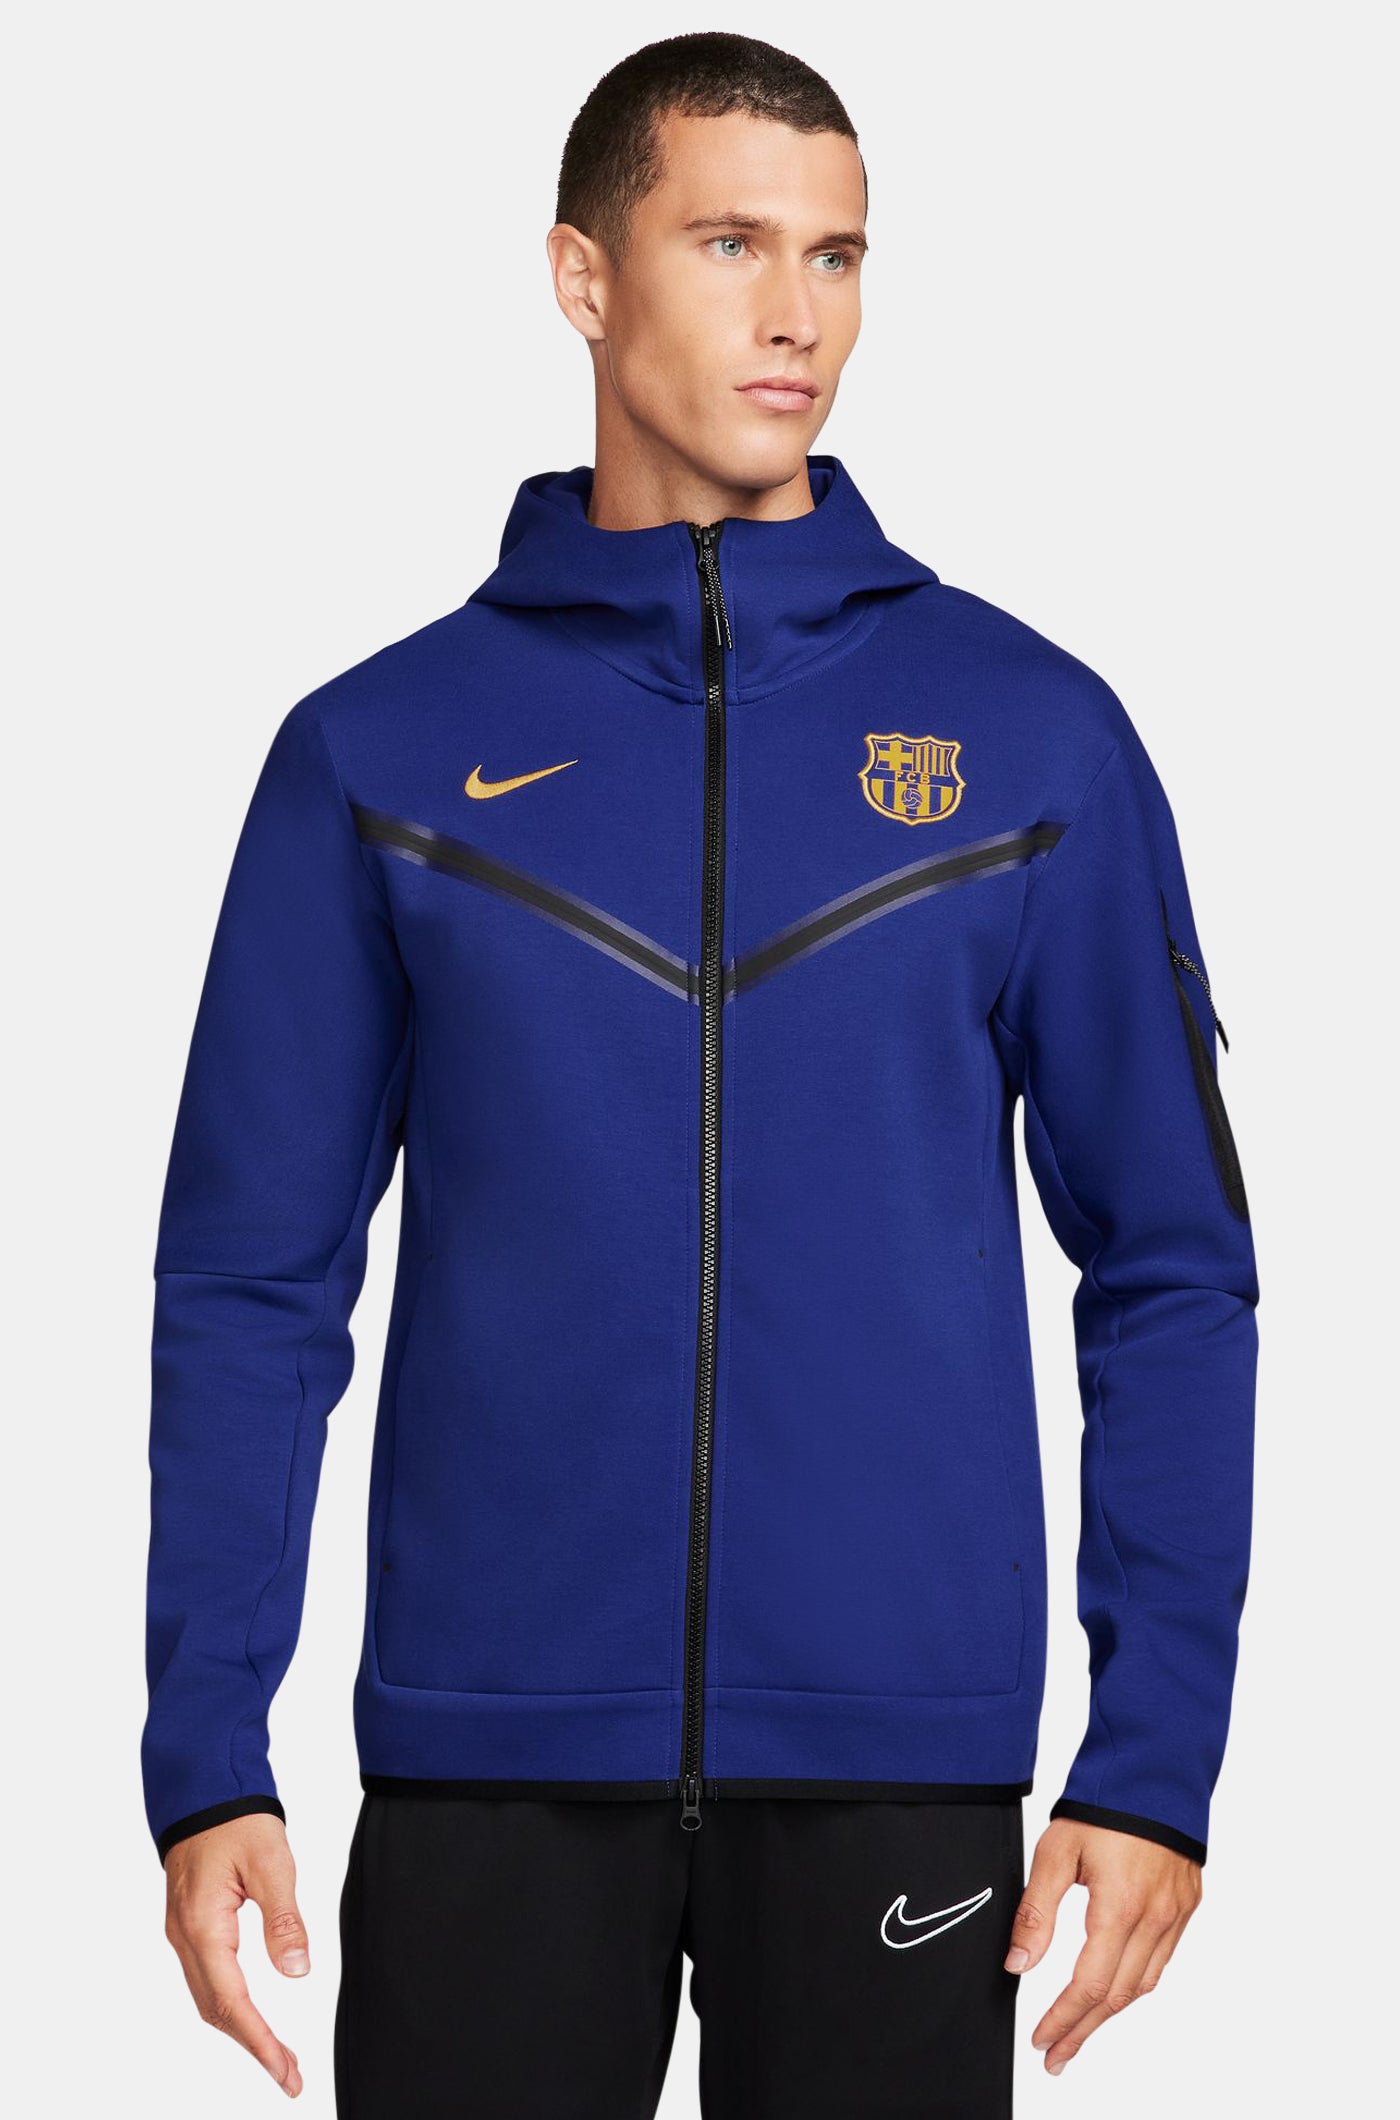 Tech jacket blue royal Barça Nike – Barça Official Store Spotify Camp Nou